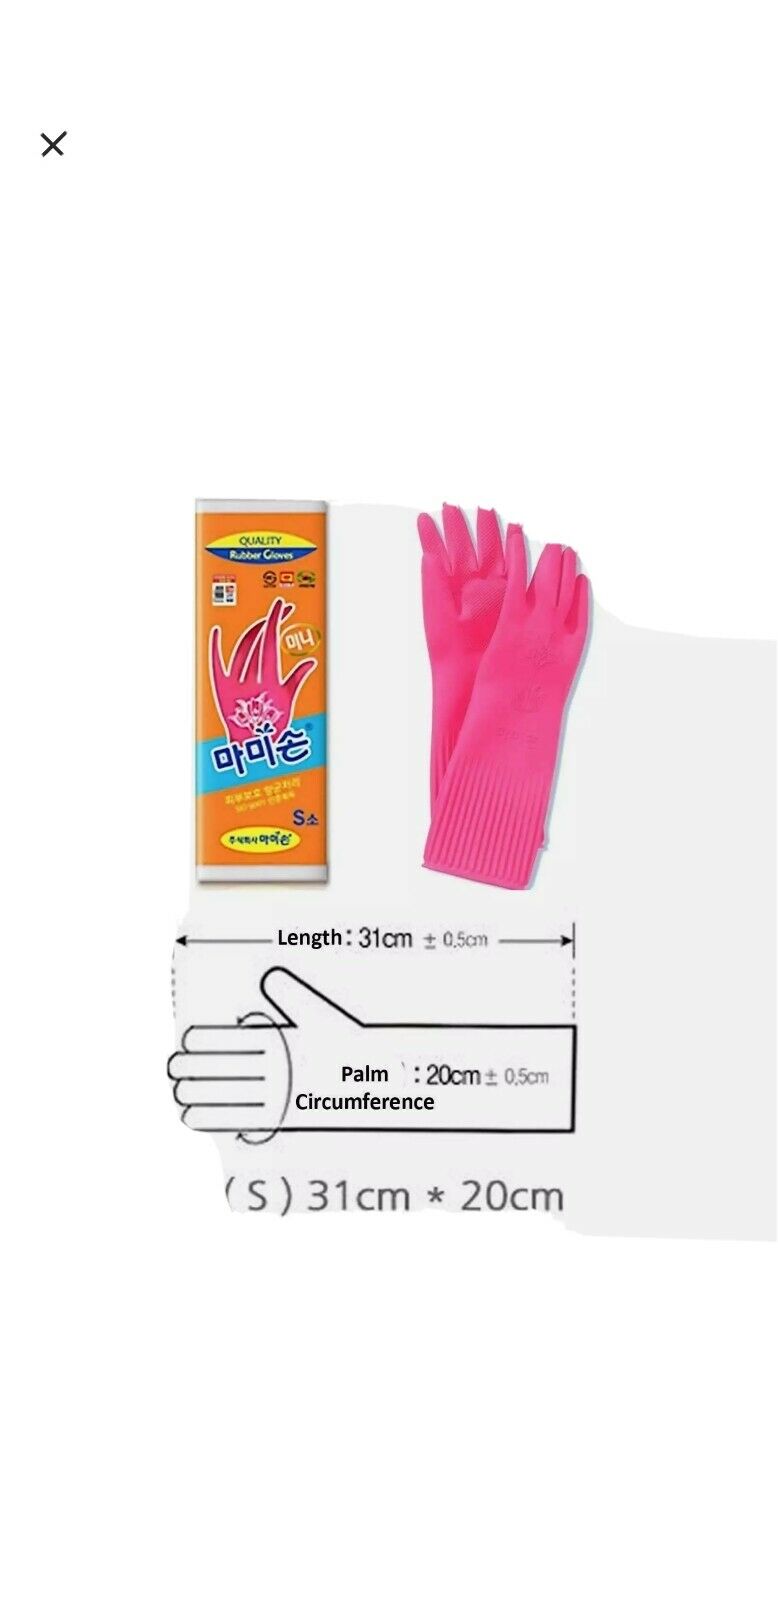 Mamison Reusable Waterproof Household Dishwashing Rubber Gloves 2 Pair Set (4)